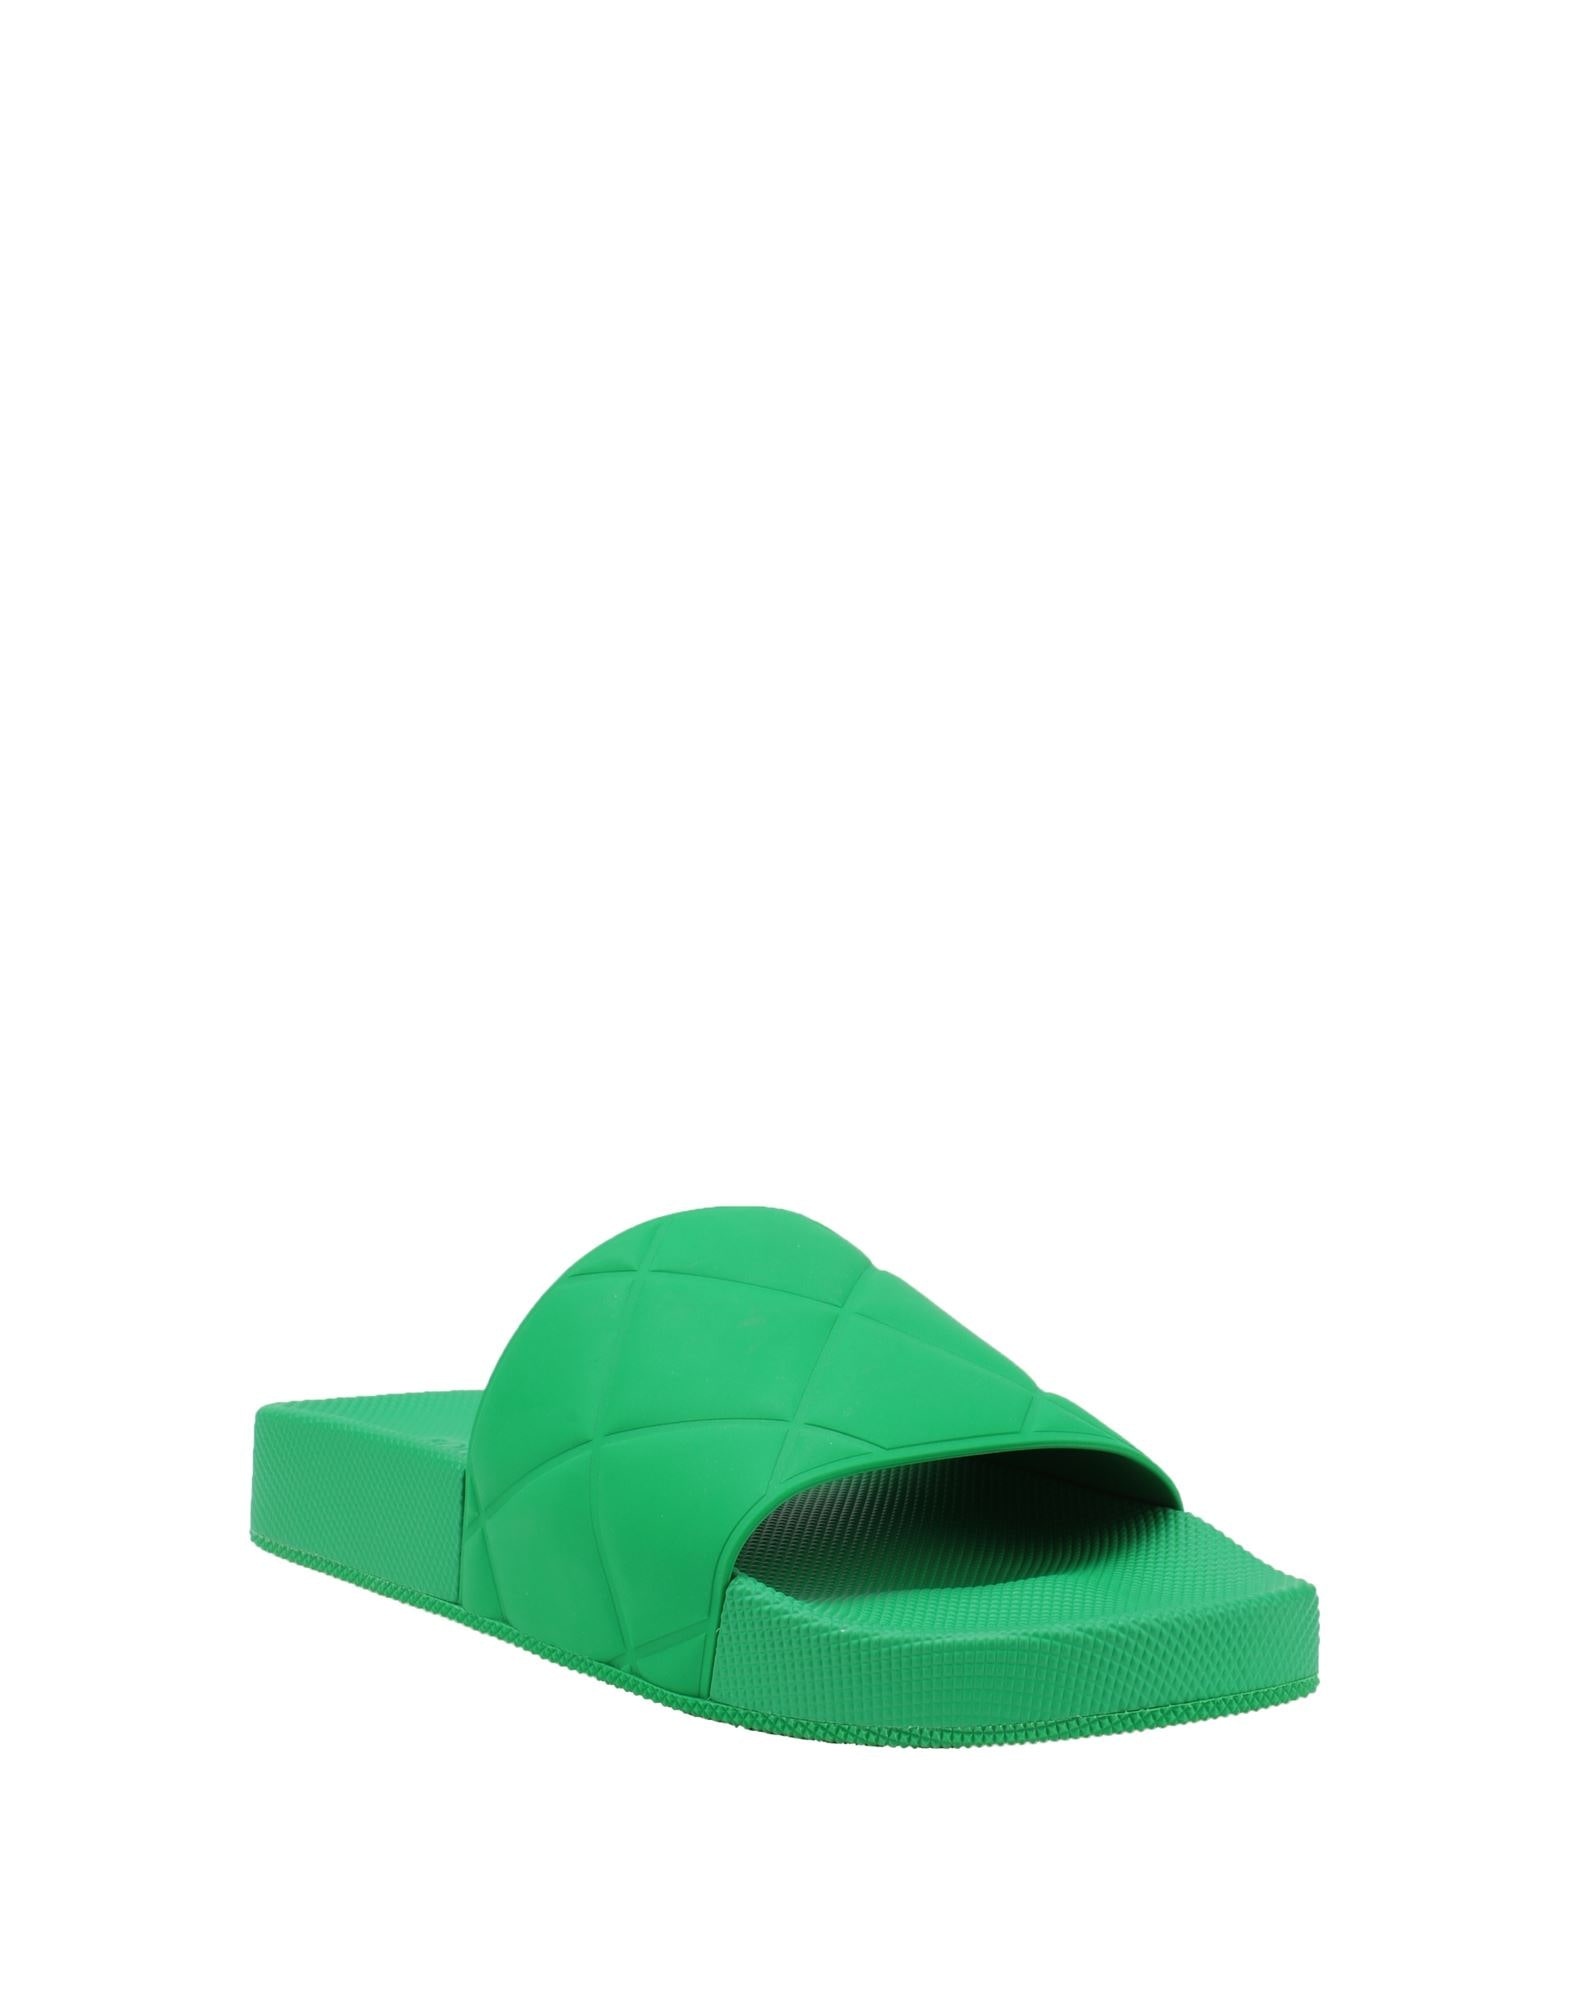 Green Women's Sandals - 2